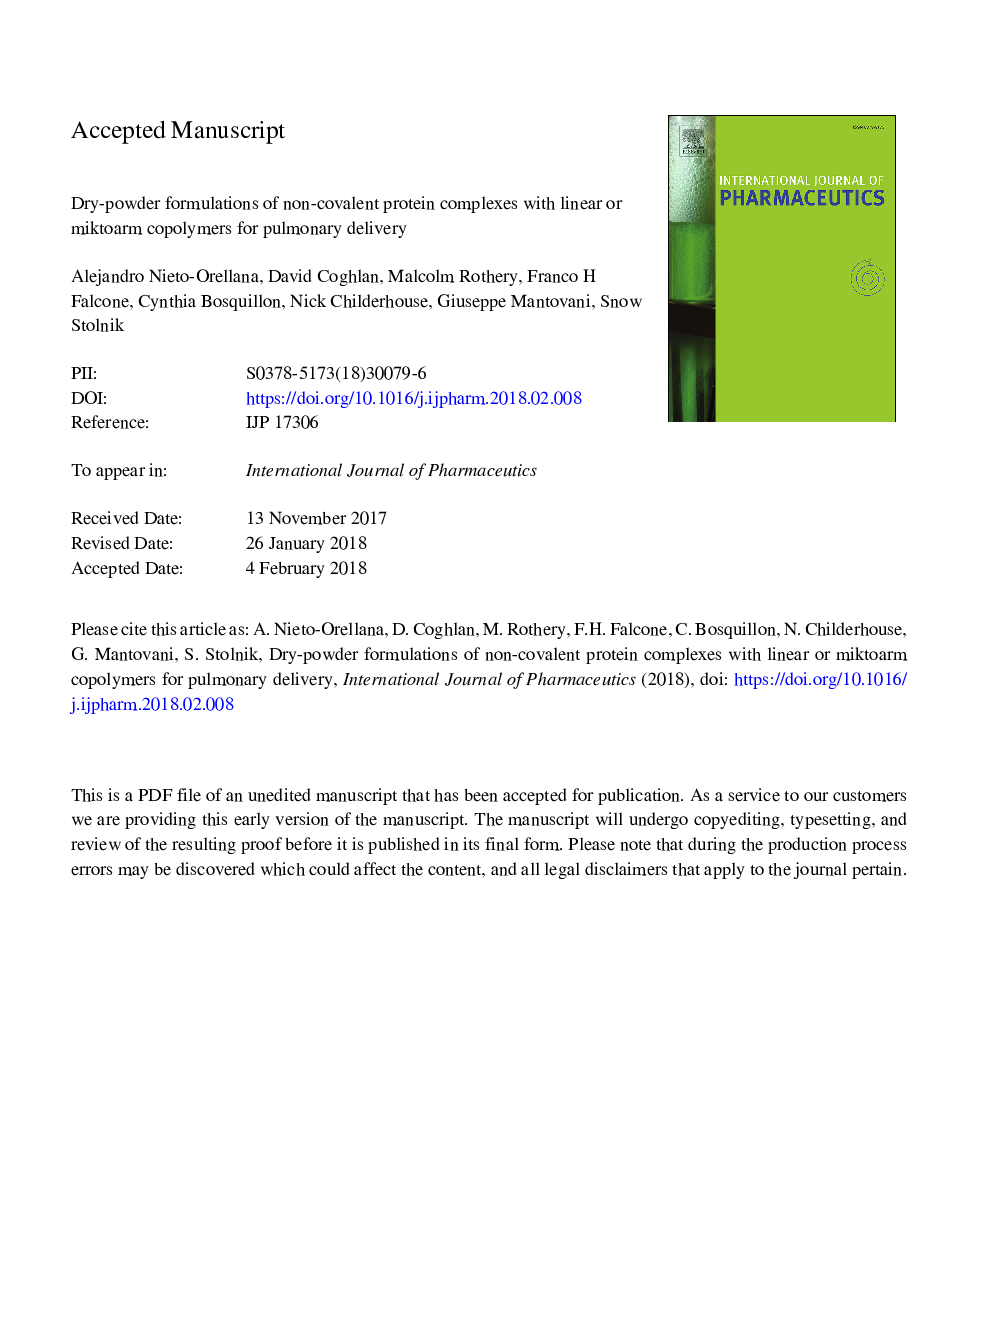 فرمولاسیون خشک پودر پروتئین های غیر کووالانتی با کوپلیمرهای خطی یا میکرومار برای تحویل ریوی 